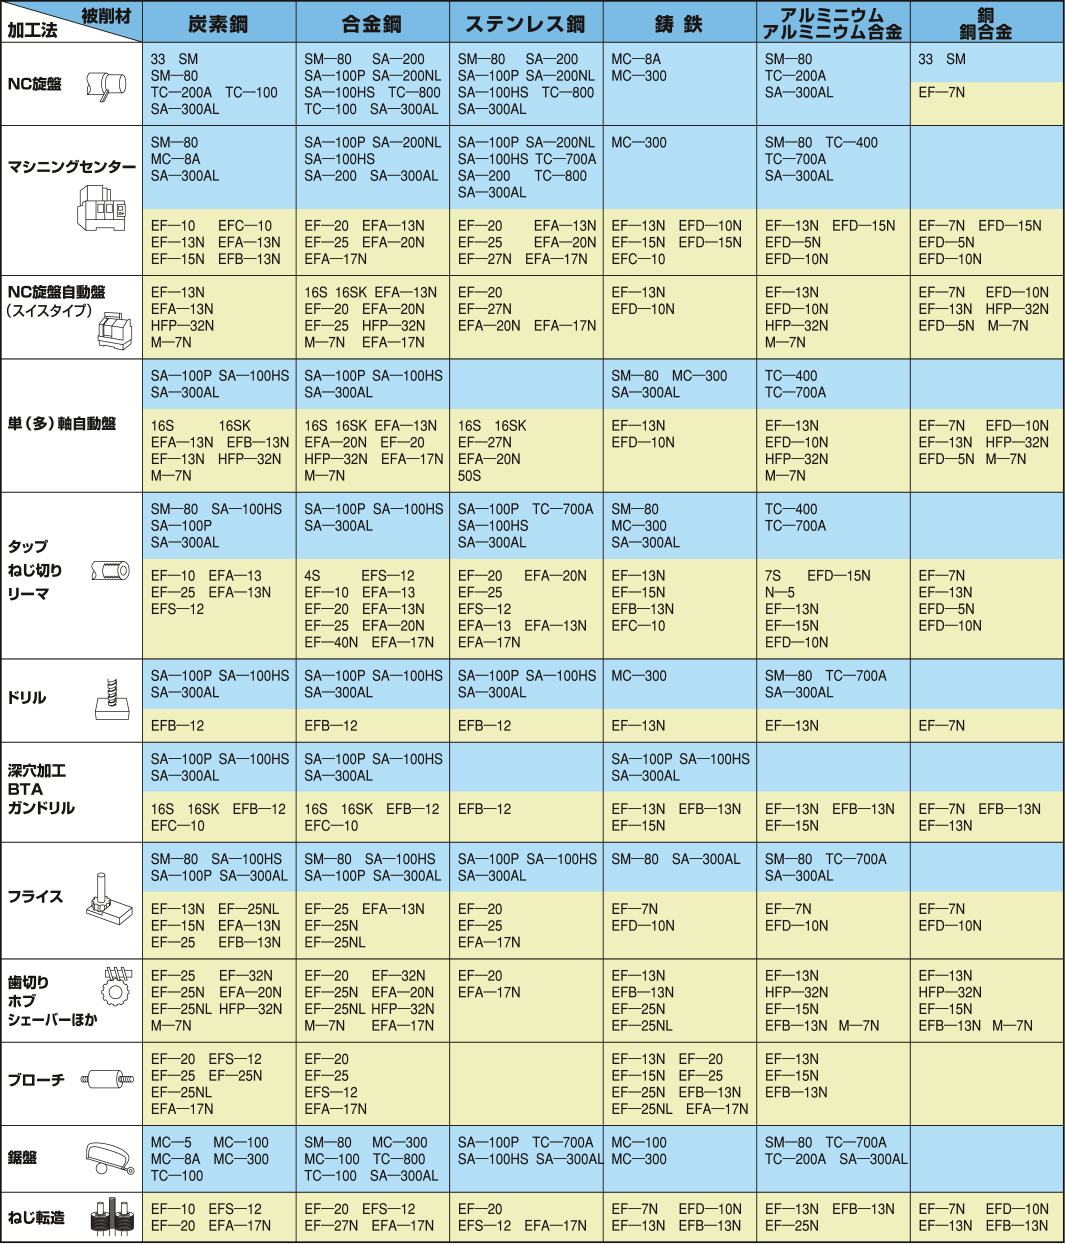 加工法・被削材別 標準推奨表 | 日本グリース株式会社